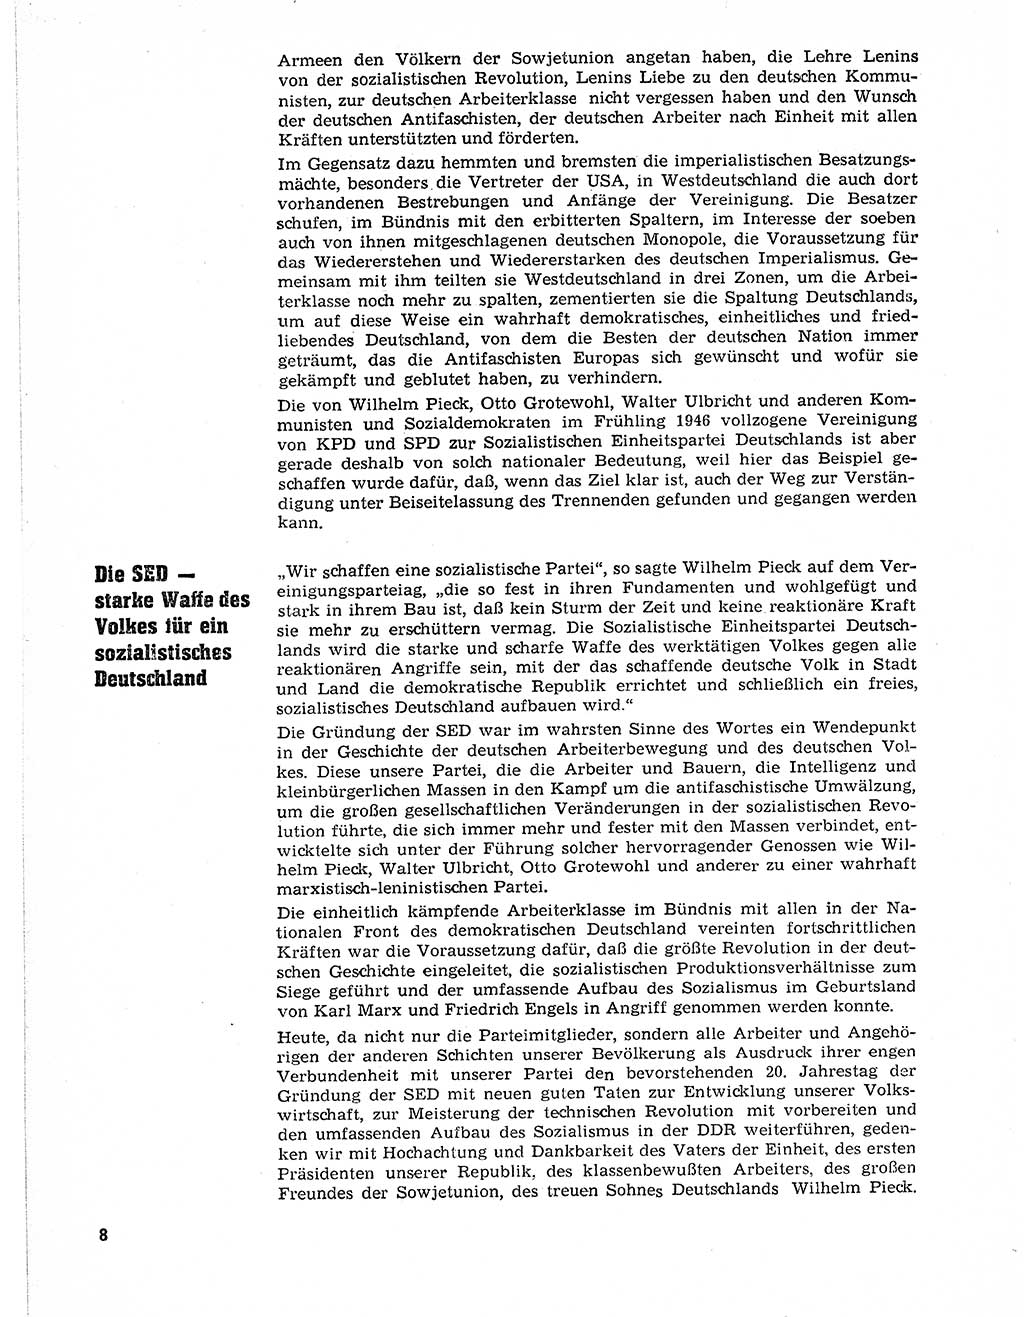 Neuer Weg (NW), Organ des Zentralkomitees (ZK) der SED (Sozialistische Einheitspartei Deutschlands) für Fragen des Parteilebens, 21. Jahrgang [Deutsche Demokratische Republik (DDR)] 1966, Seite 8 (NW ZK SED DDR 1966, S. 8)